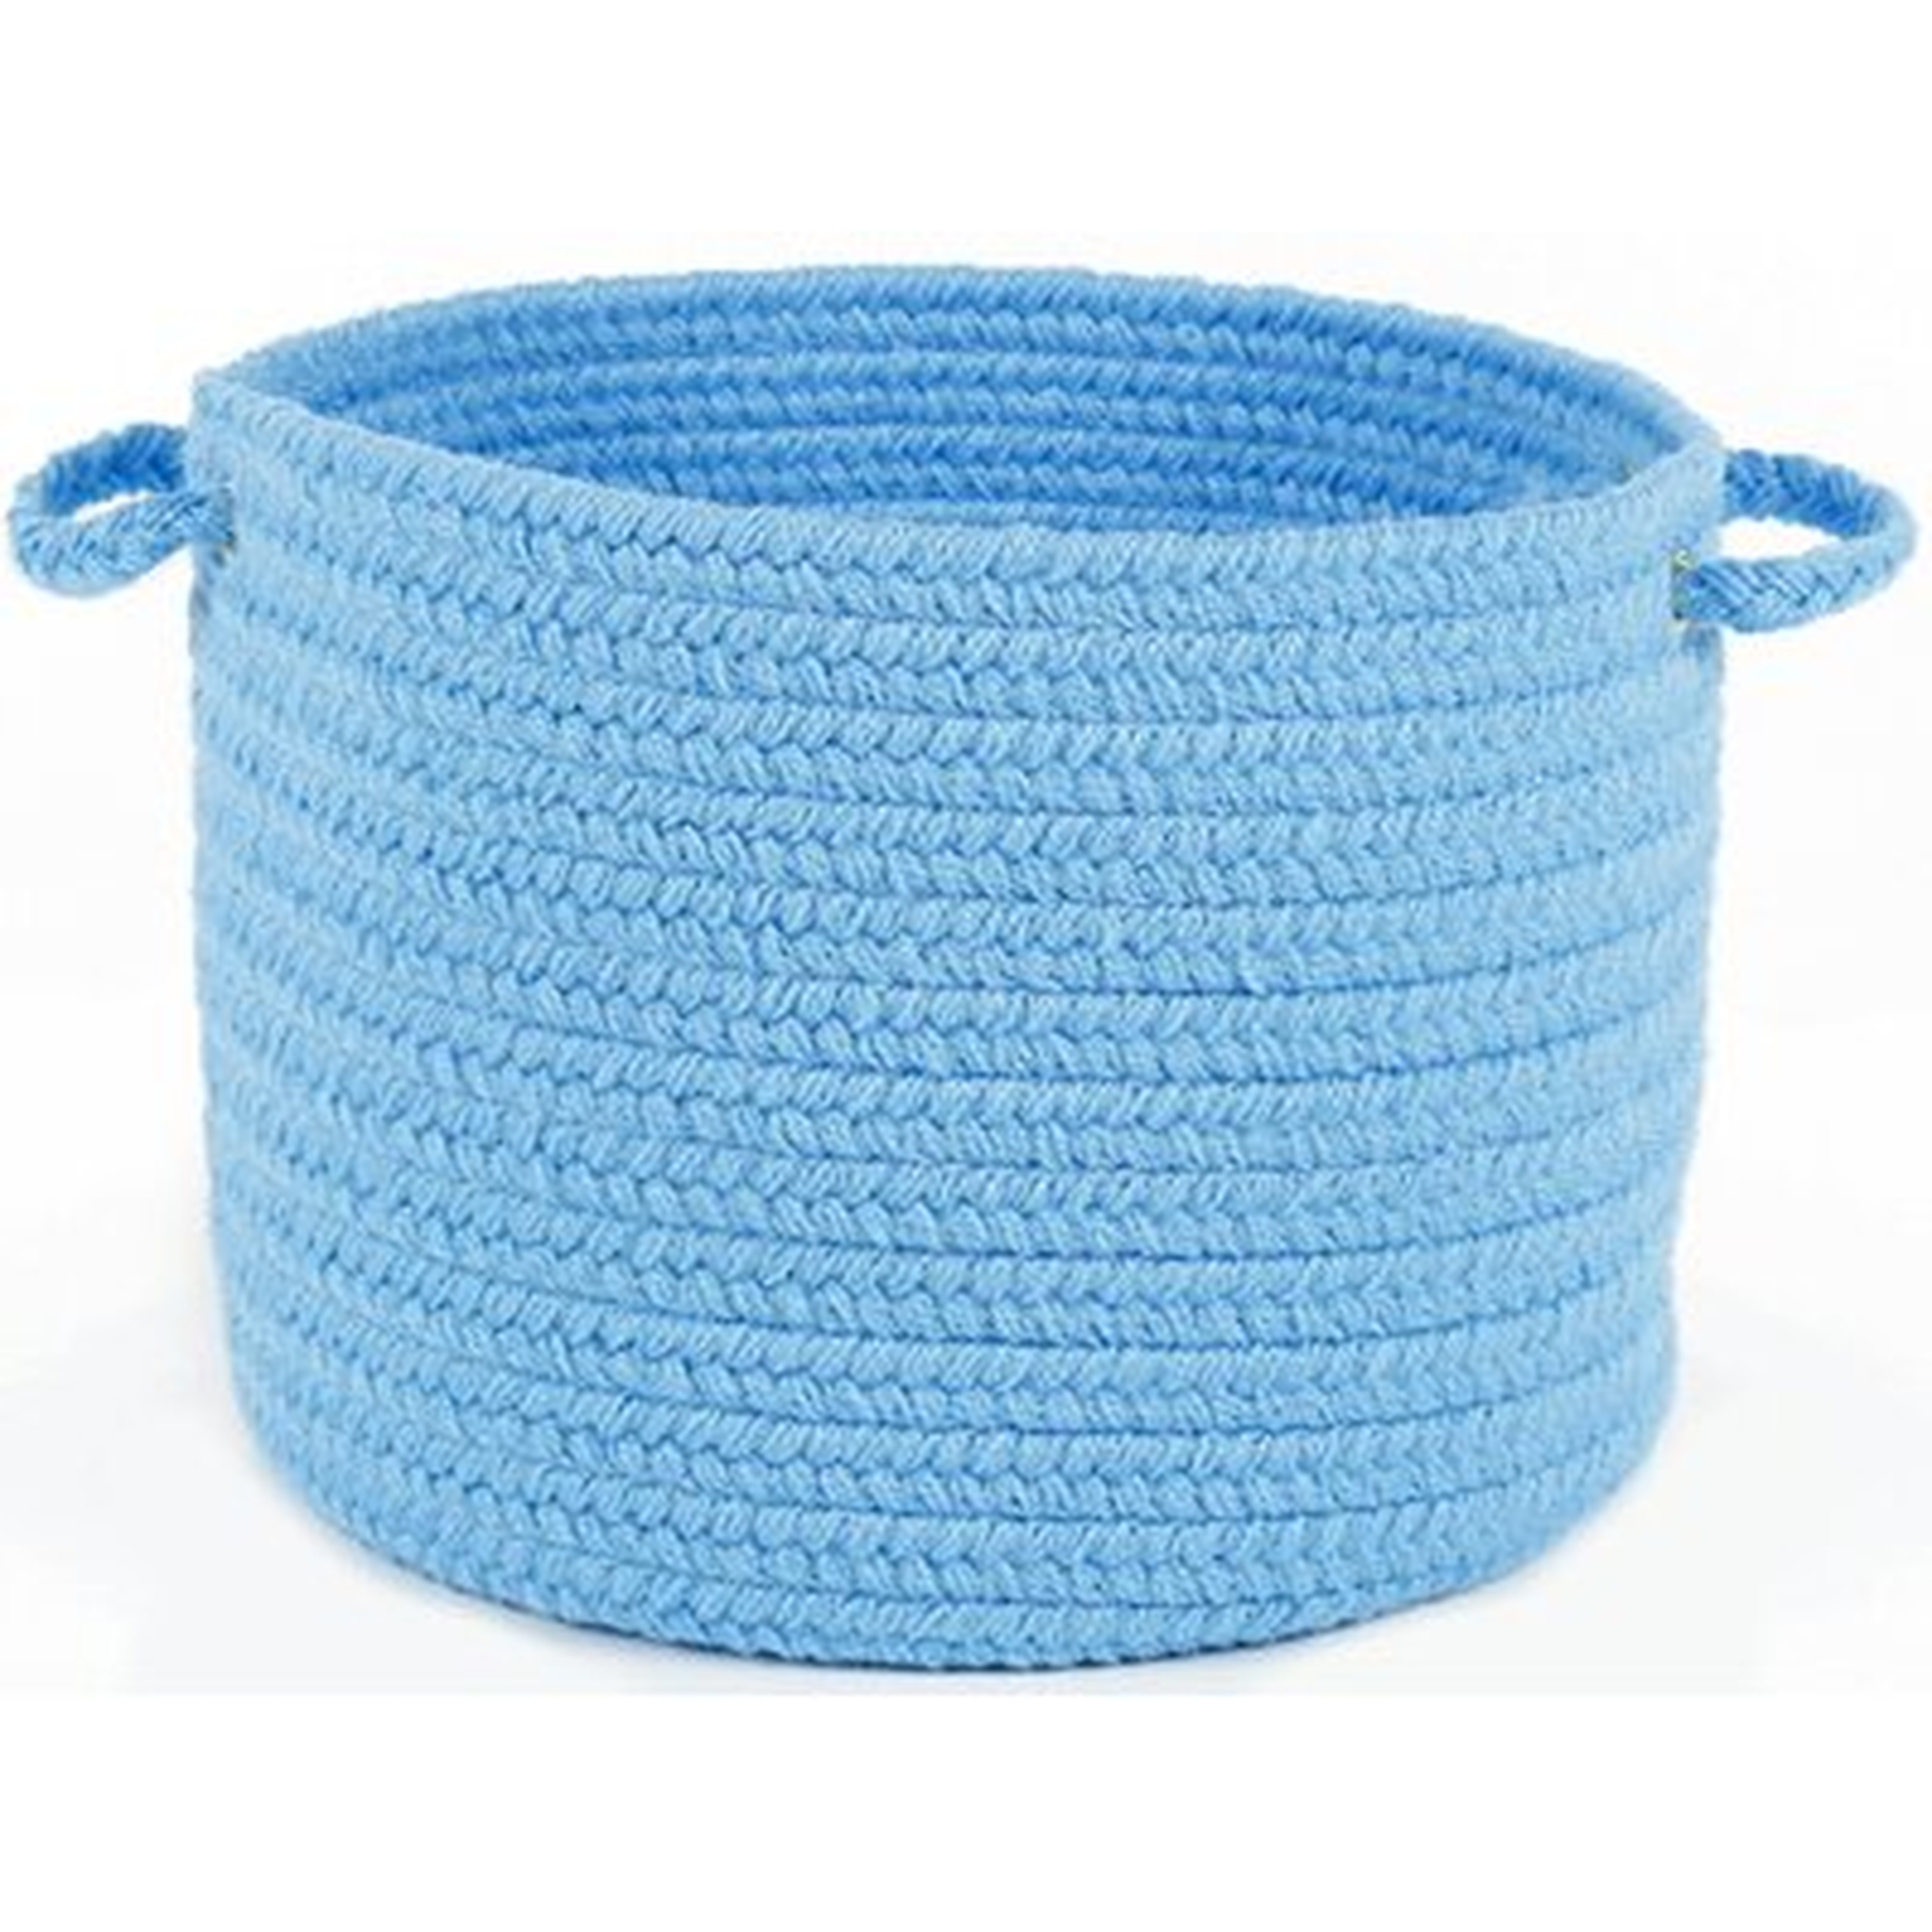 Misha Solid Fabric Basket - Wayfair